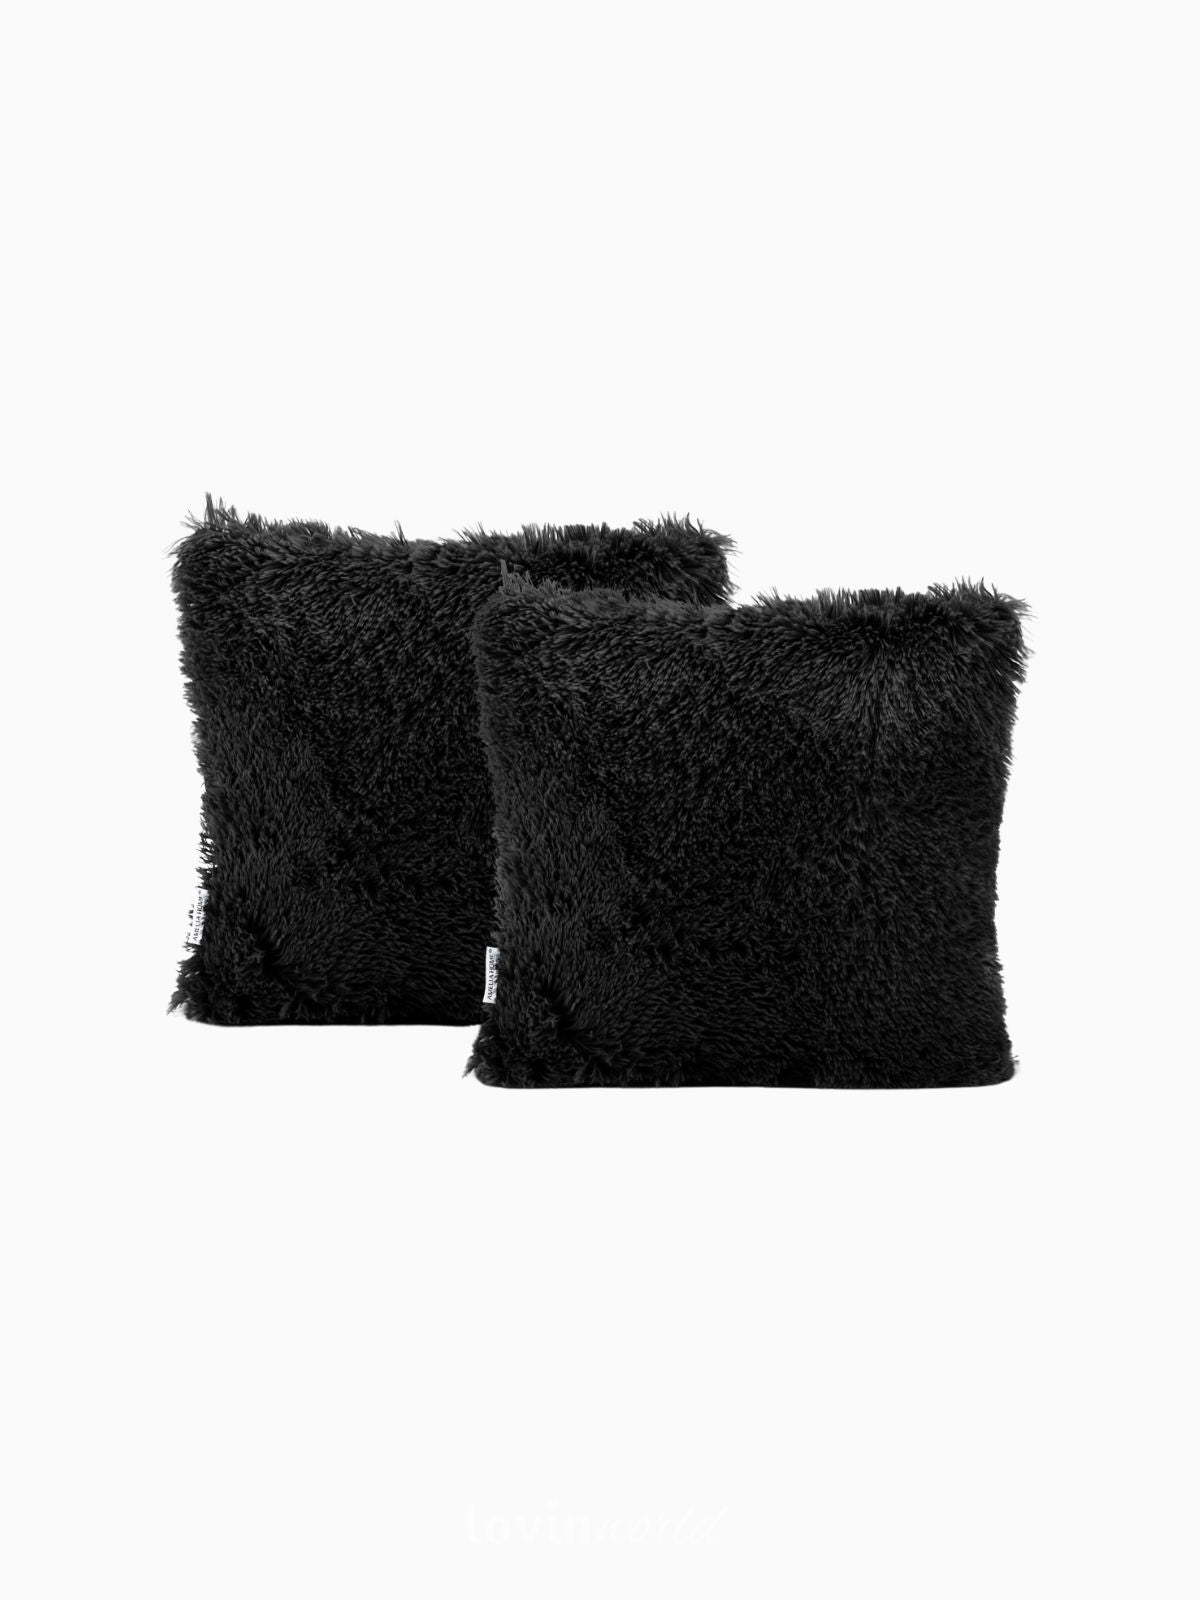 2 Federe per cuscino Karvag in colore nero 45x45 cm.-1